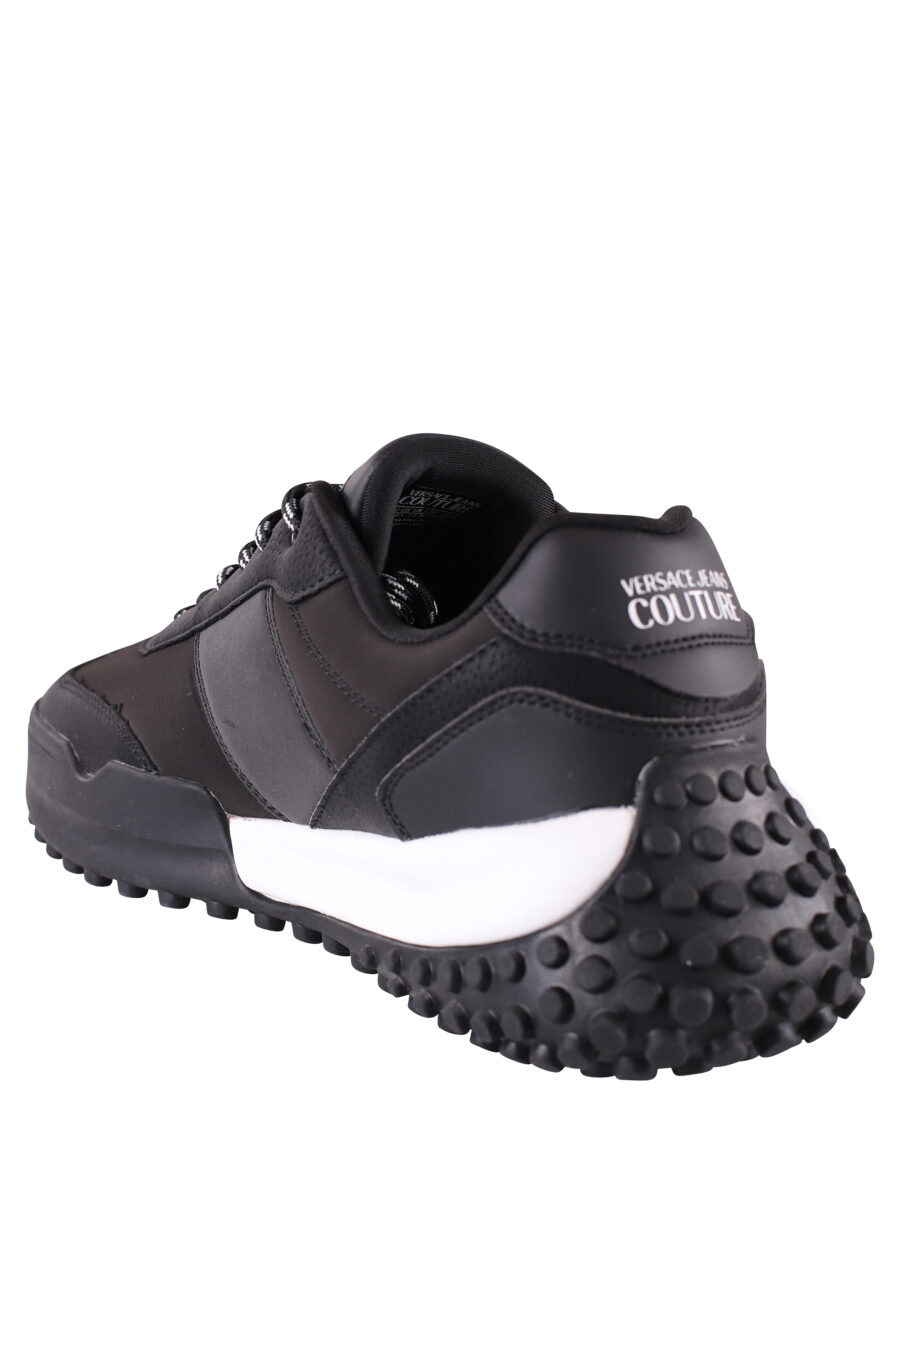 Zapatillas negras con minilogo blanco y suela bicolor - IMG 8490